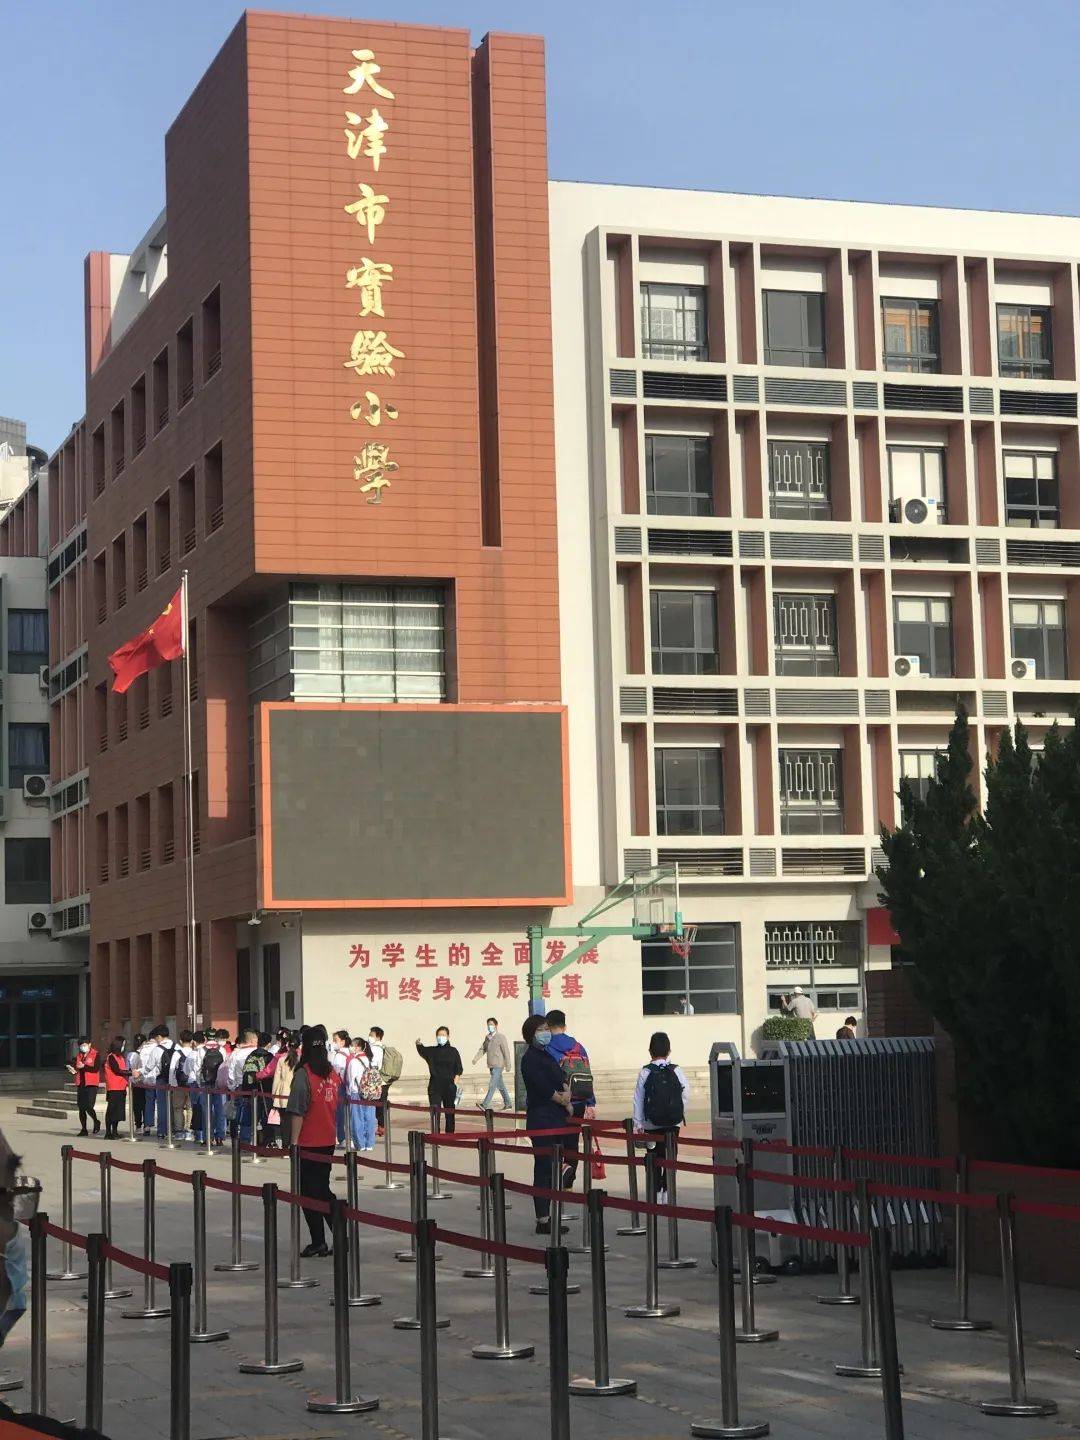 来了又走 走了又来 准备妥当 图:天津市实验小学